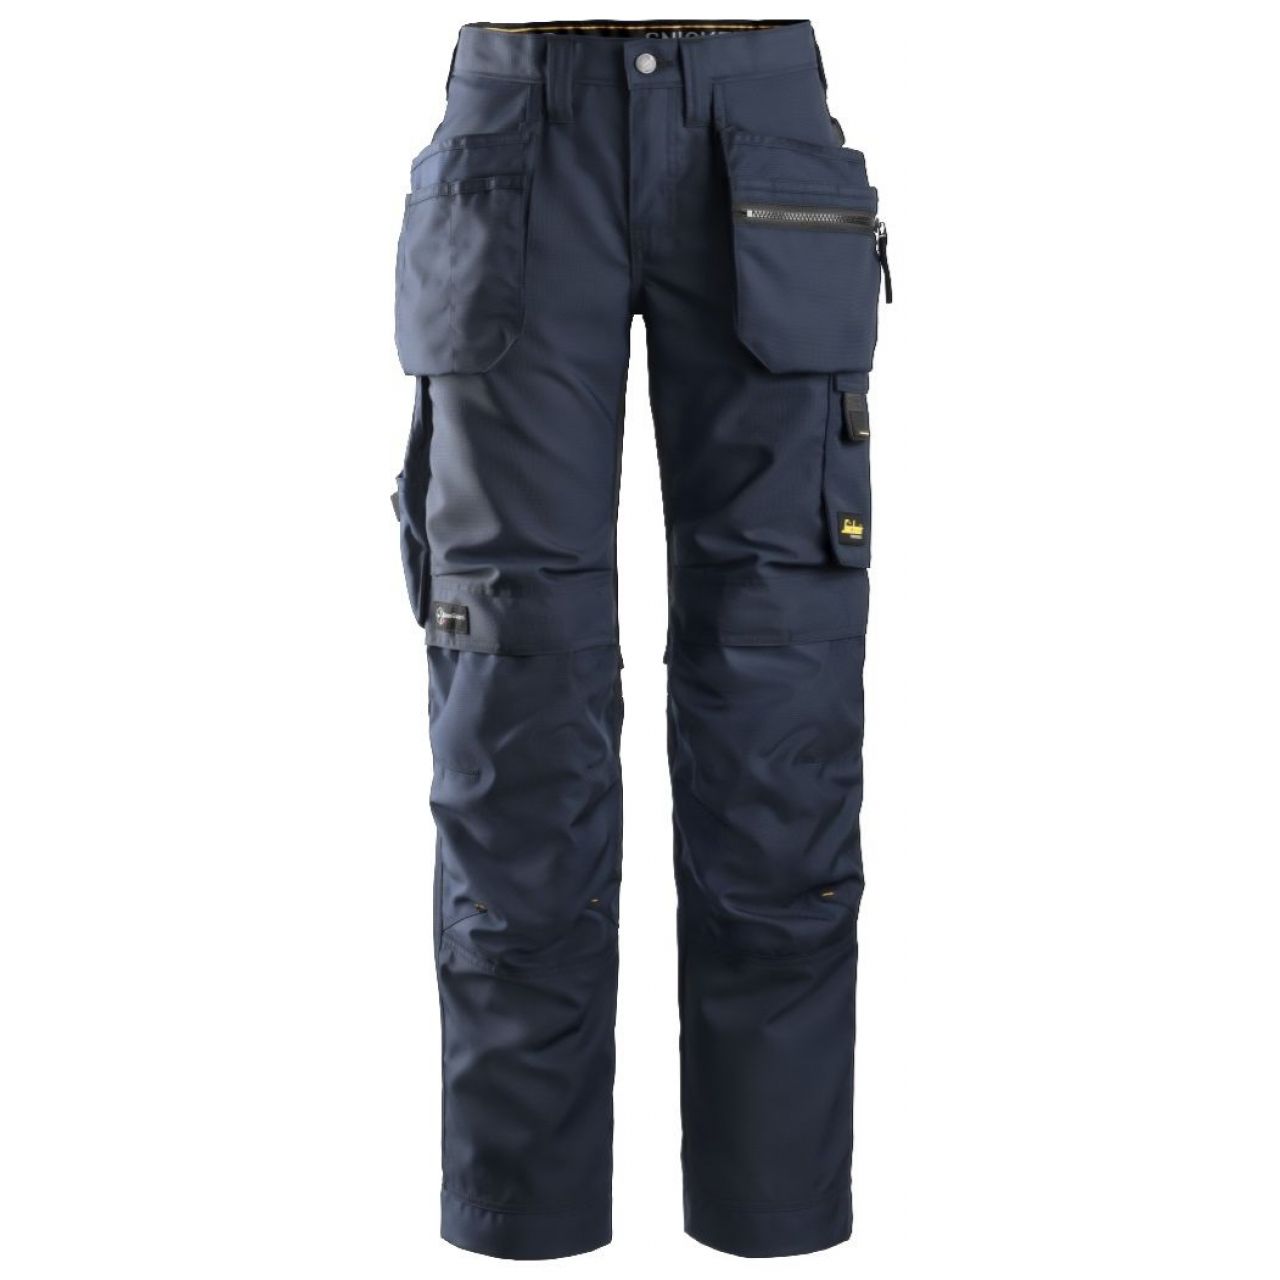 Pantalon de mujer AllroundWork+ con bolsillos flotantes azul marino-negro talla 021